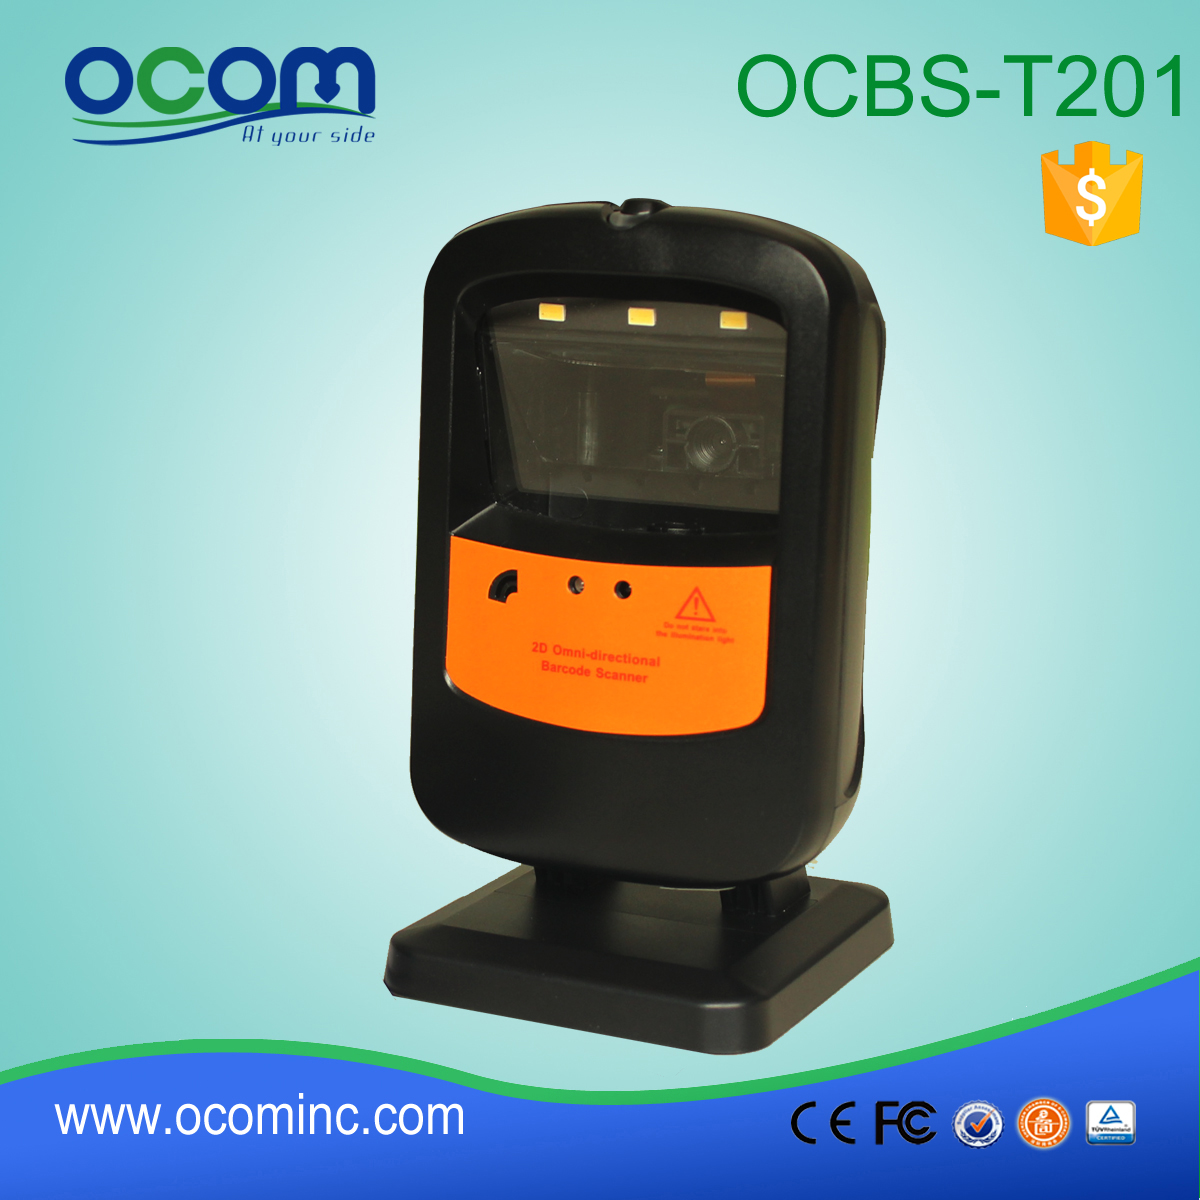 OCBS-T201: احادي الباركود سعر الماسح الضوئي، الباركود وحدة قارئ